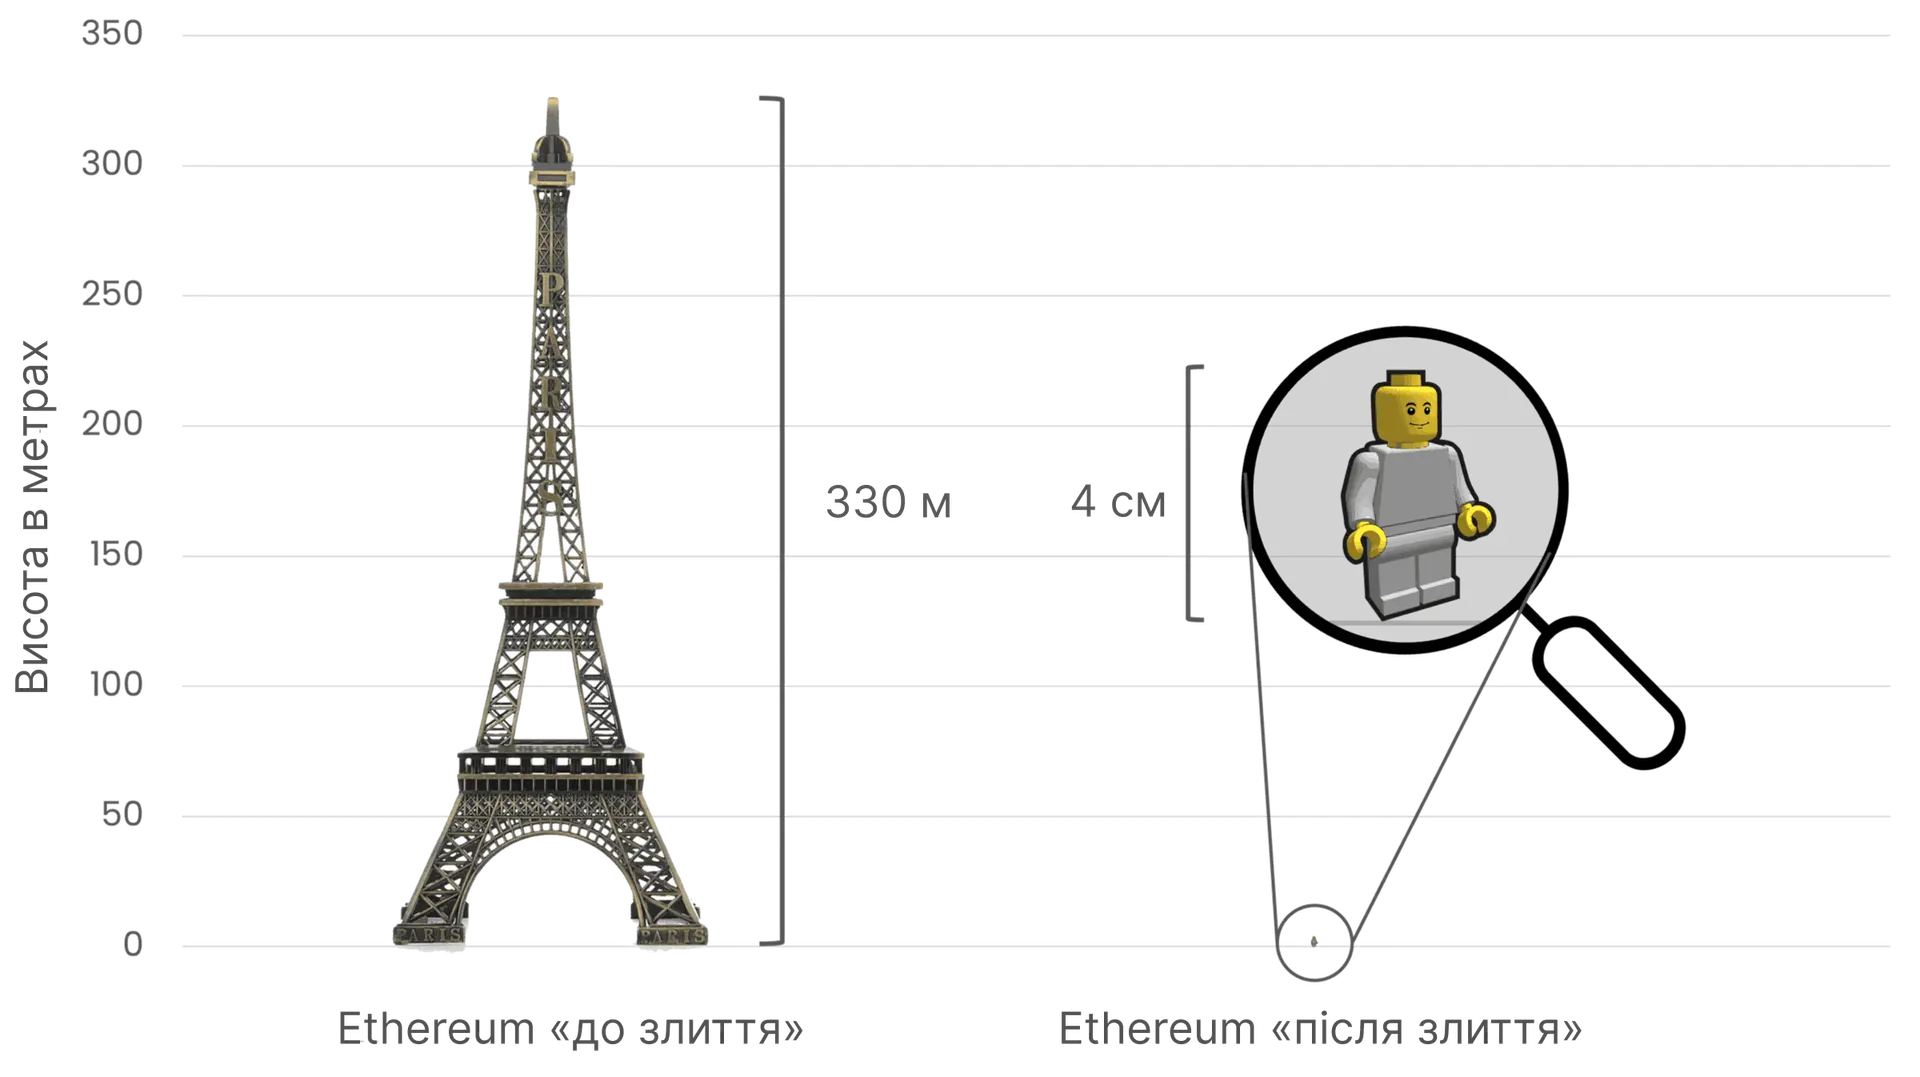 Порівняння енергоспоживання Ethereum до та після злиття за допомогою Ейфелевої вежі (330 метрів заввишки) зліва, яка символізує високе енергоспоживання до злиття, і маленької фігурки Lego заввишки 4 см справа, яка відображає різке скорочення енергоспоживання після злиття.